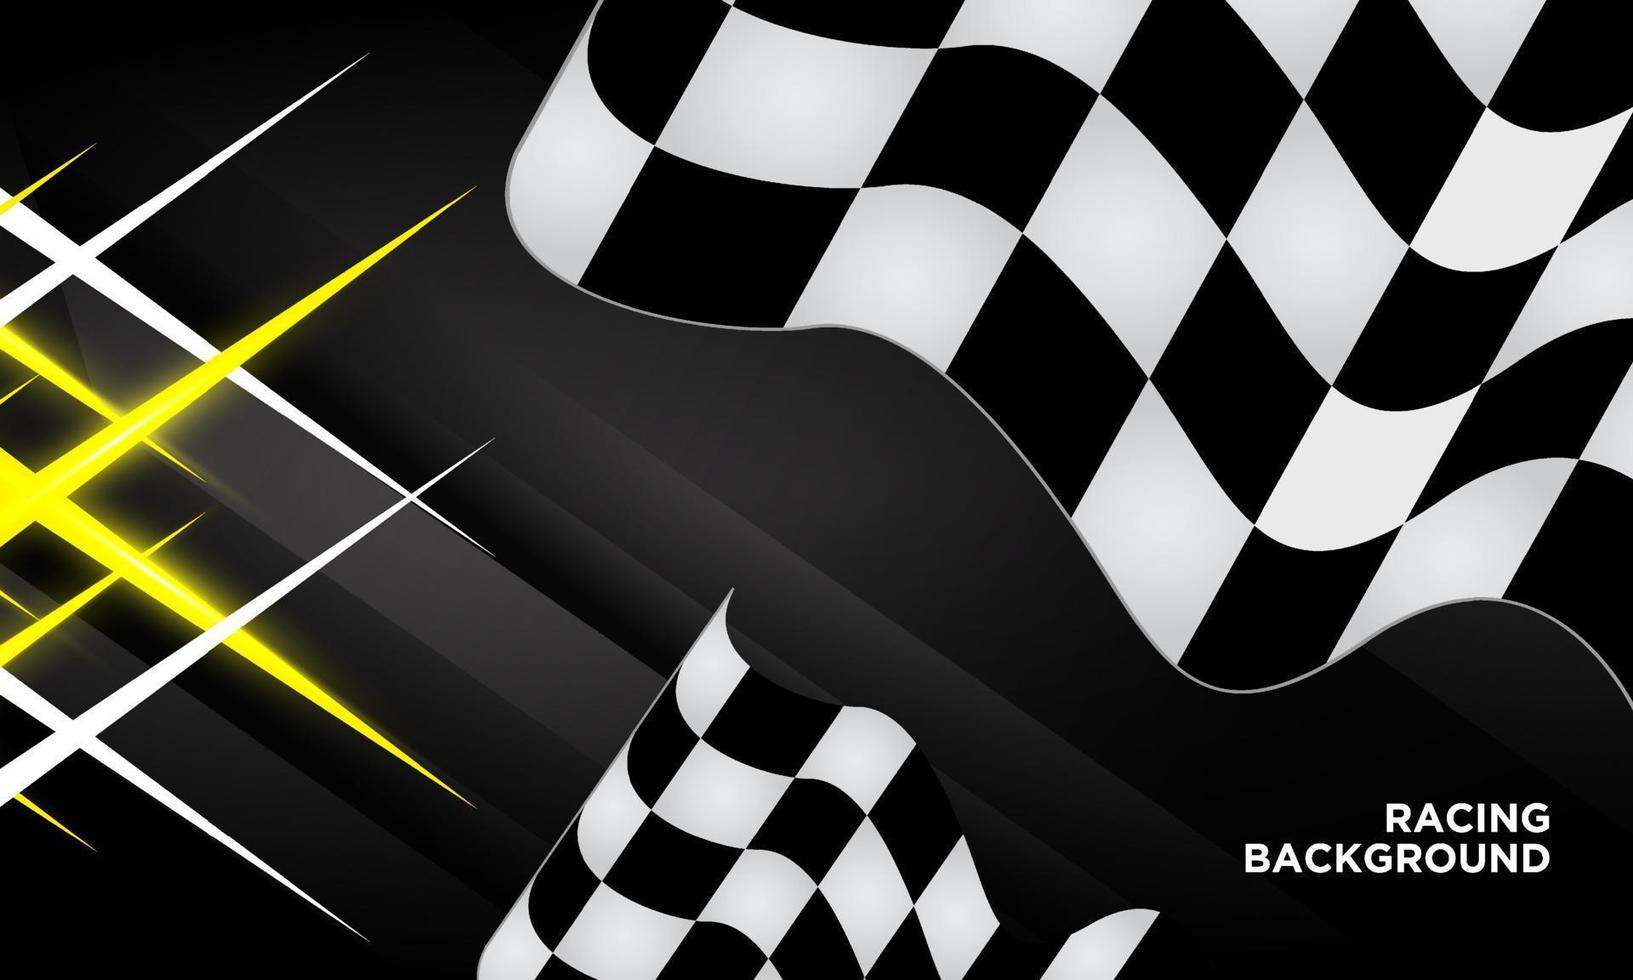 Flat design racing background. Trendy racing background design vector